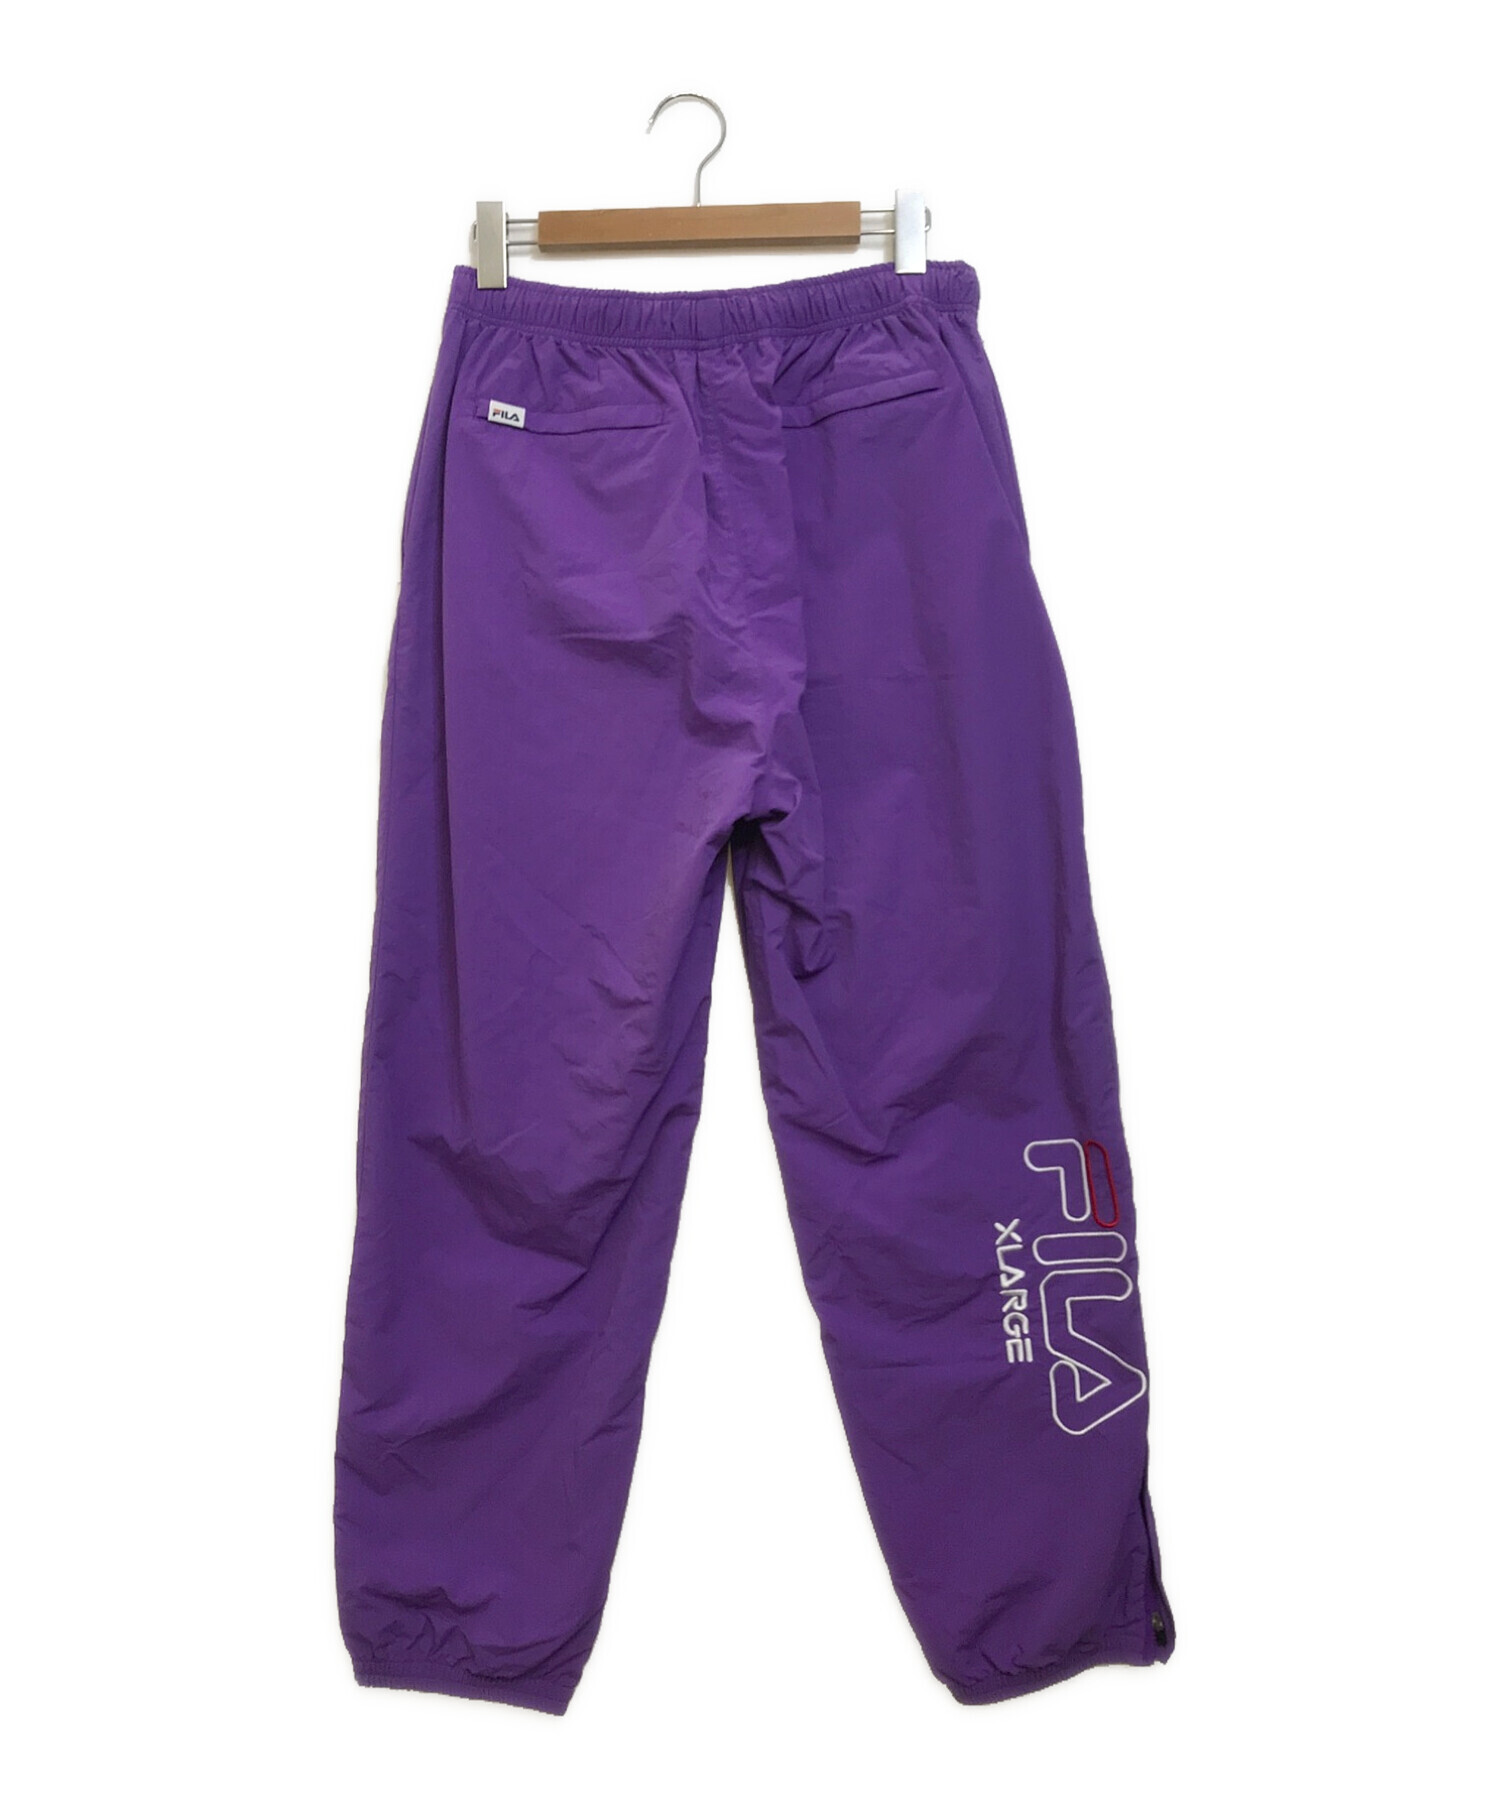 FILA×XLARGE コラボ パンツ 紫 トラックパンツ Mサイズ